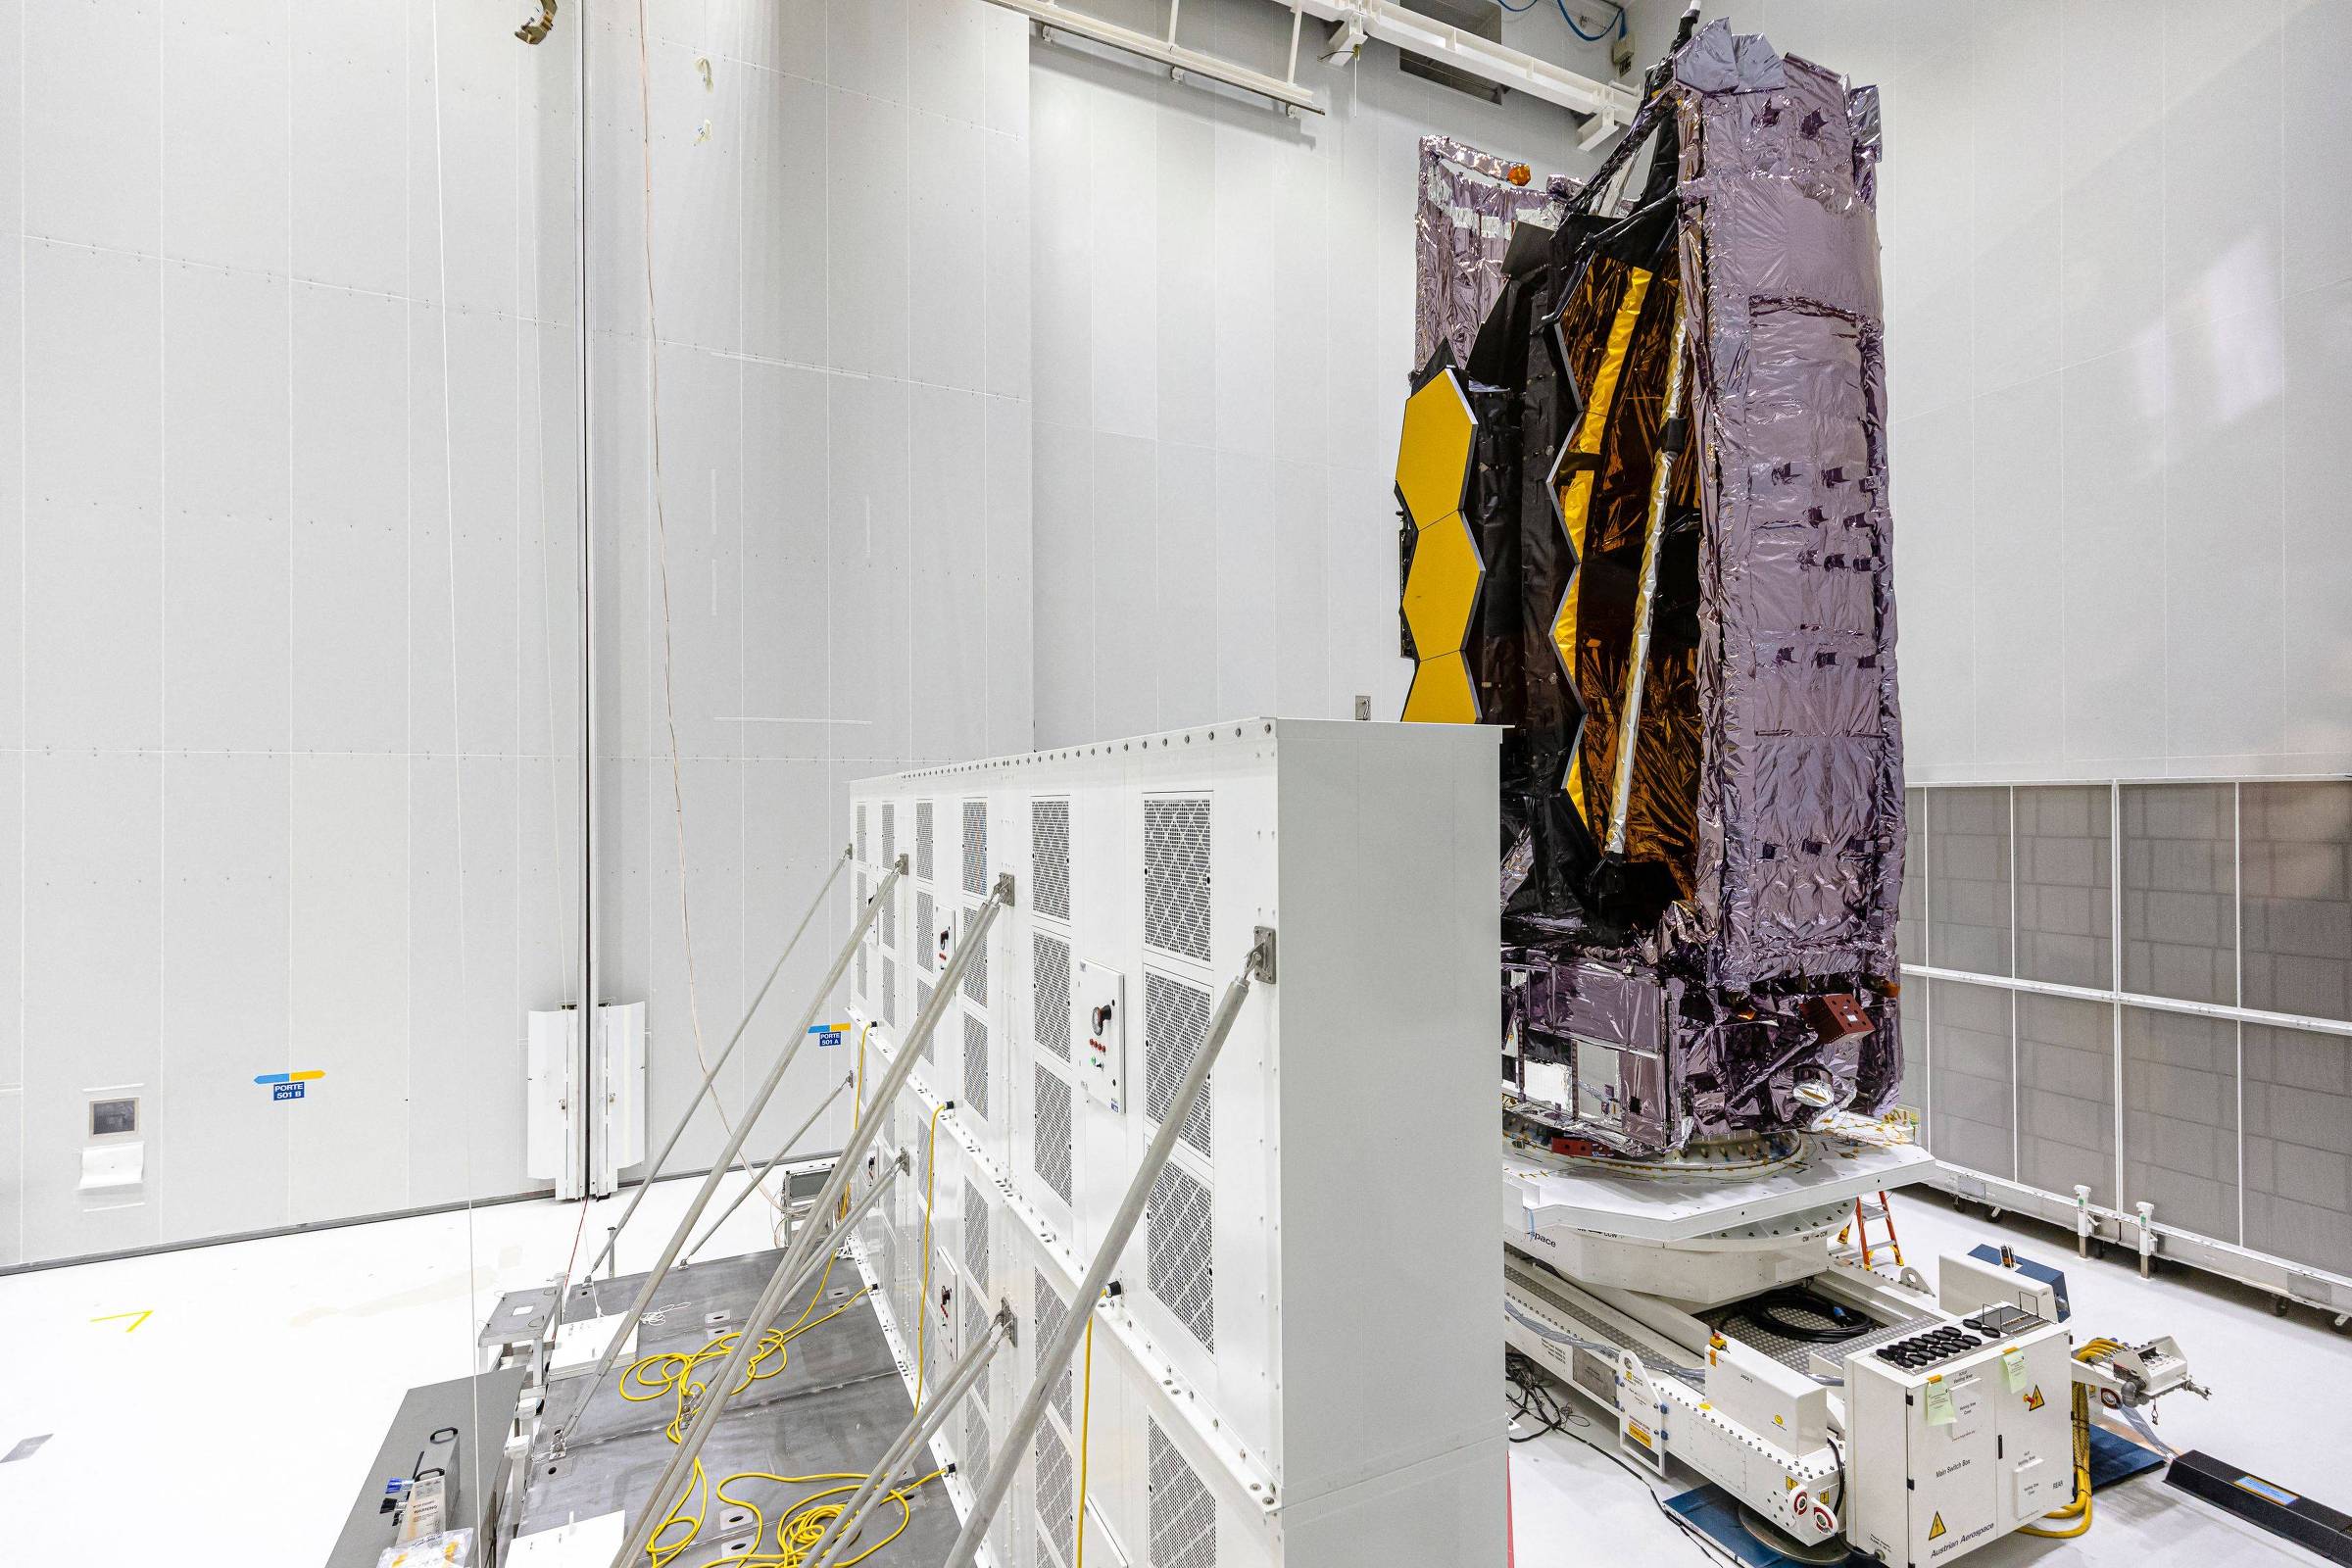 Le lancement du télescope spatial James Webb est retardé, selon la NASA – 15/12/2021 – Science